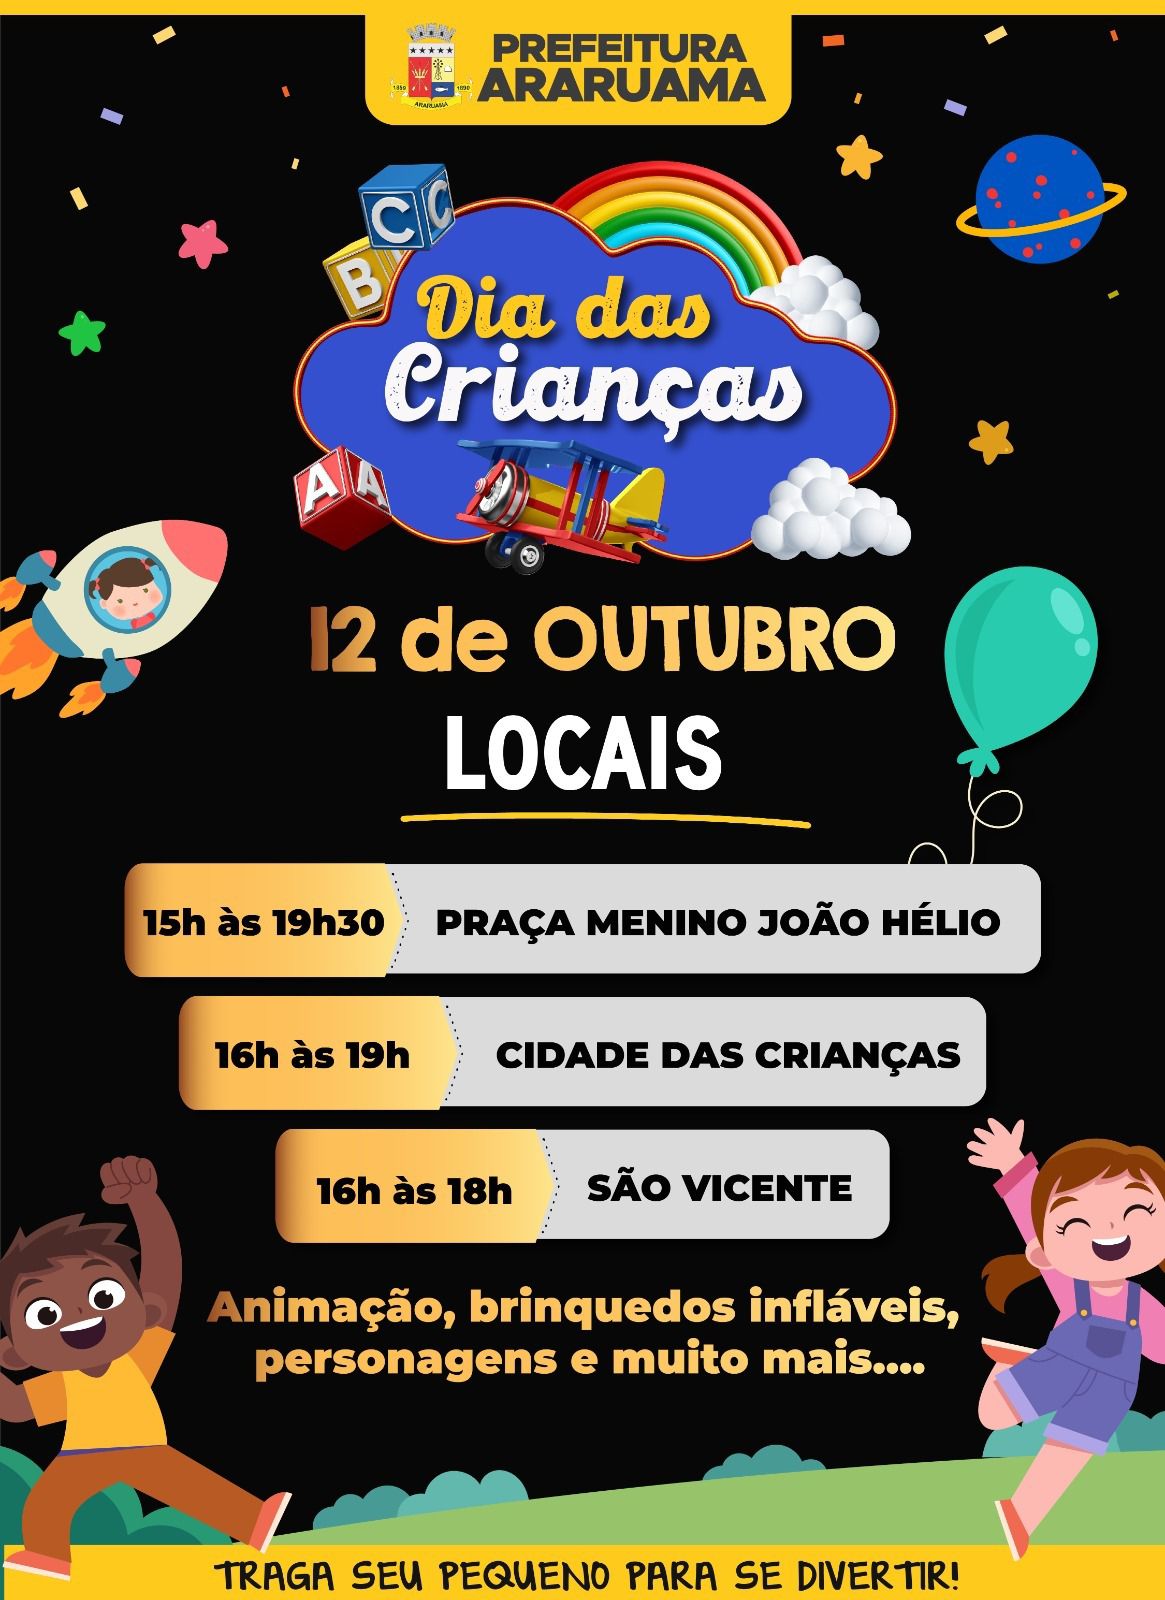 Prefeitura vai realizar três eventos para comemorar o Dia das Crianças em Araruama